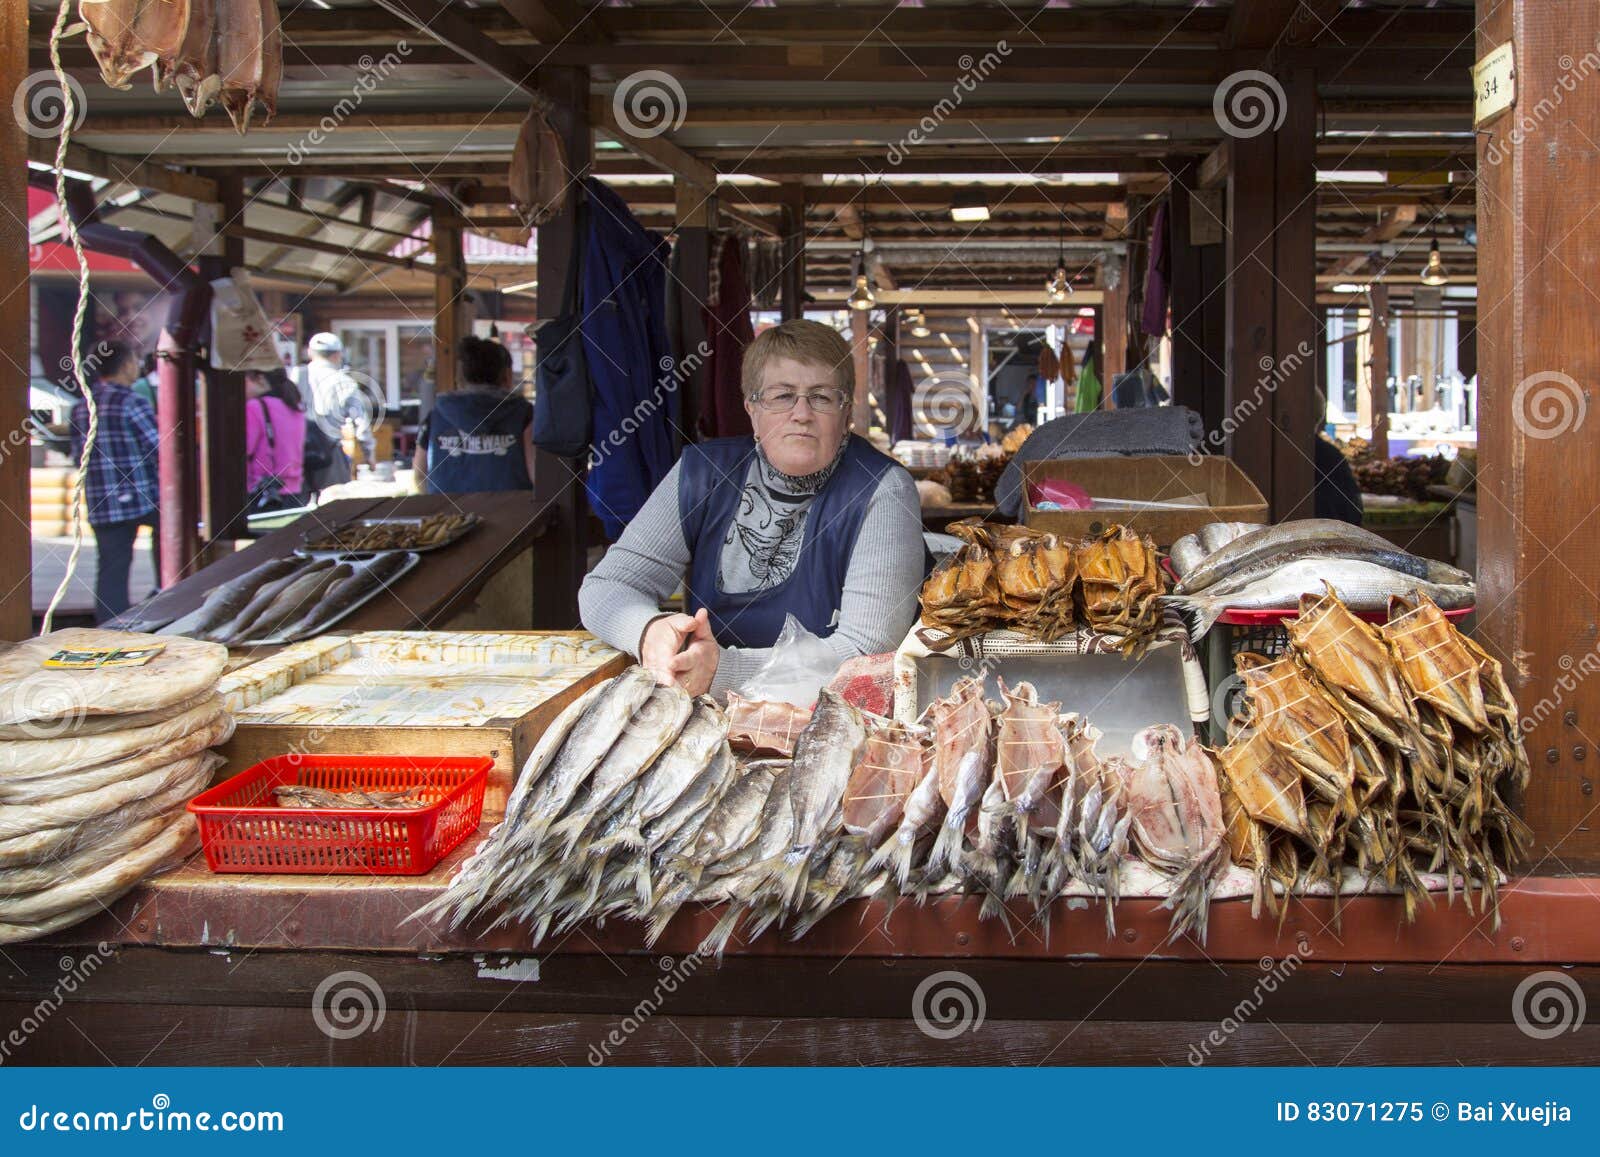 Где рыбный рынок на волне. Рыбный рынок в Новосибирске.